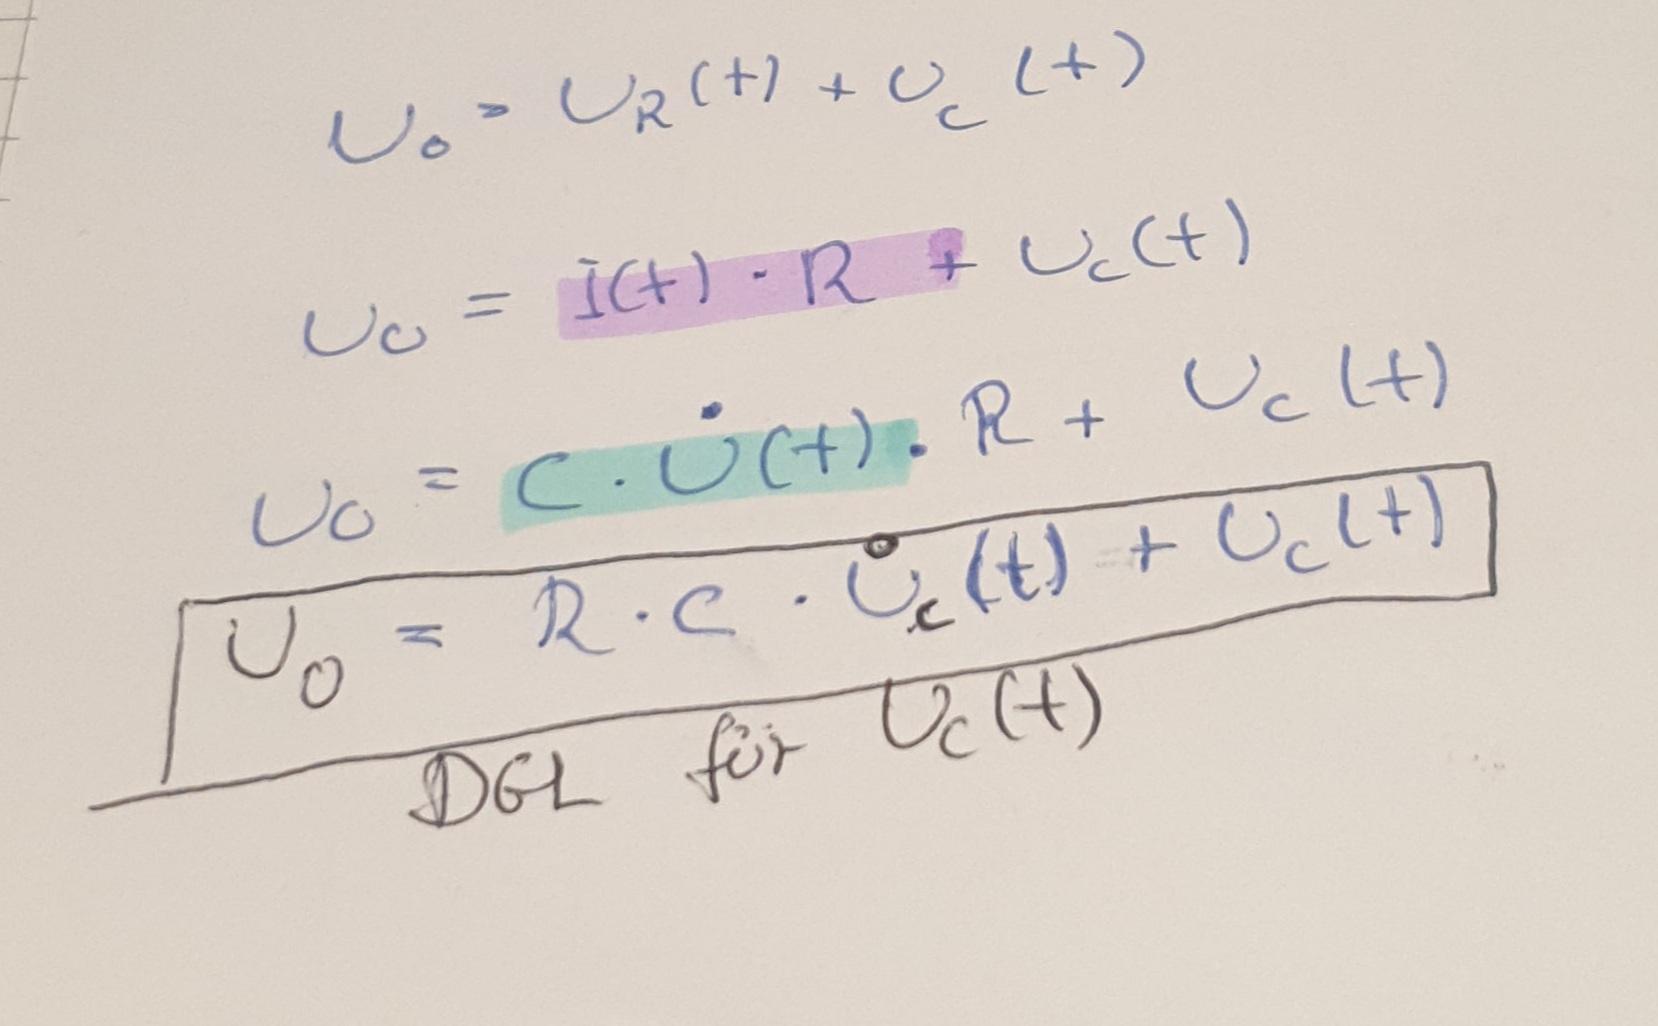 Aufladen Eines Kondensators Gleichung Fur Uc T Beweisen Schule Mathe Physik